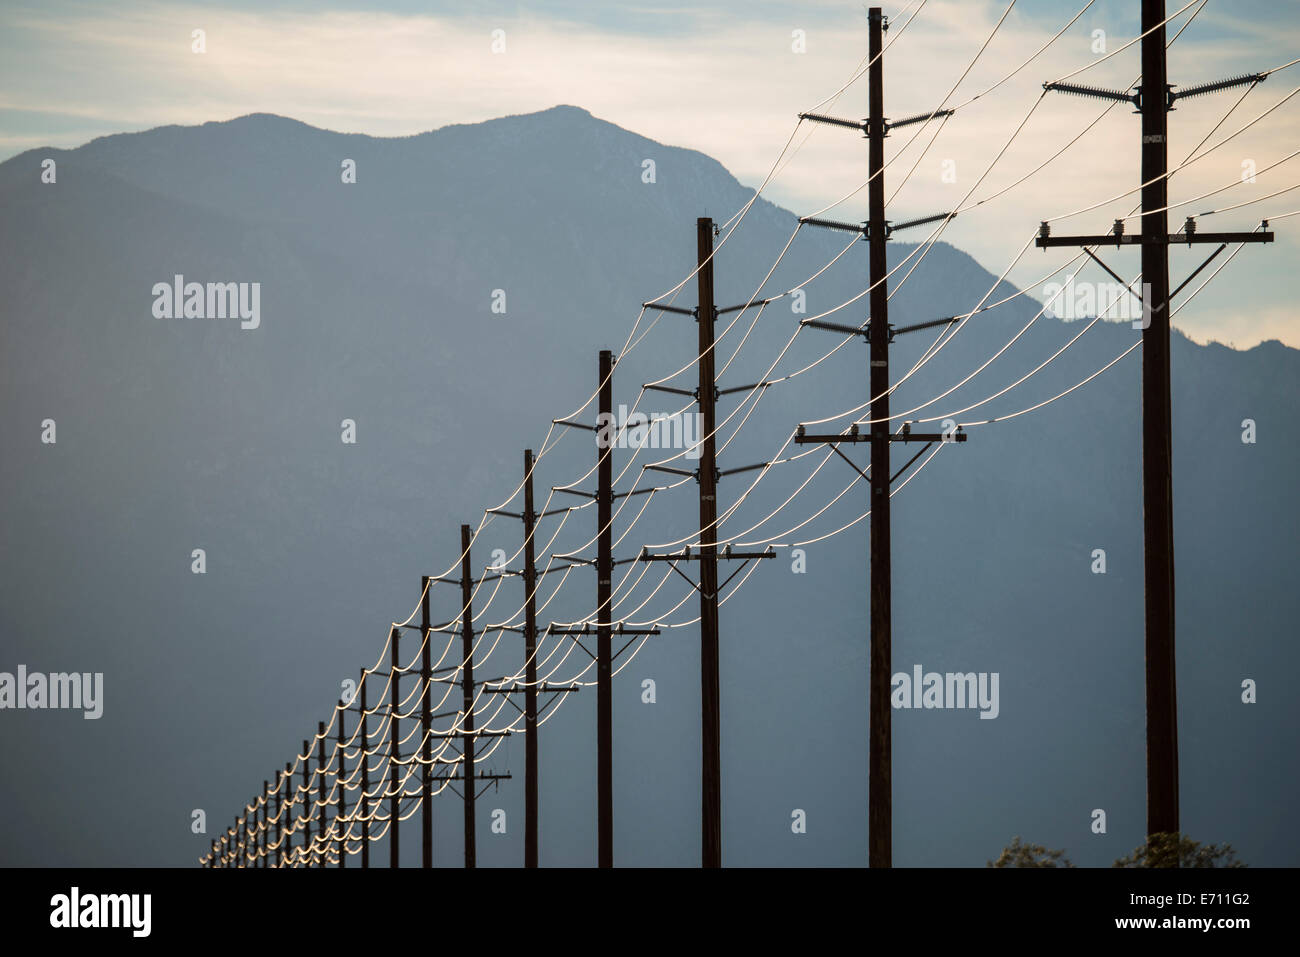 Stromleitungen in Reihen über die Landschaft vor einem Berg und Sonnenuntergang Himmel. Stockfoto